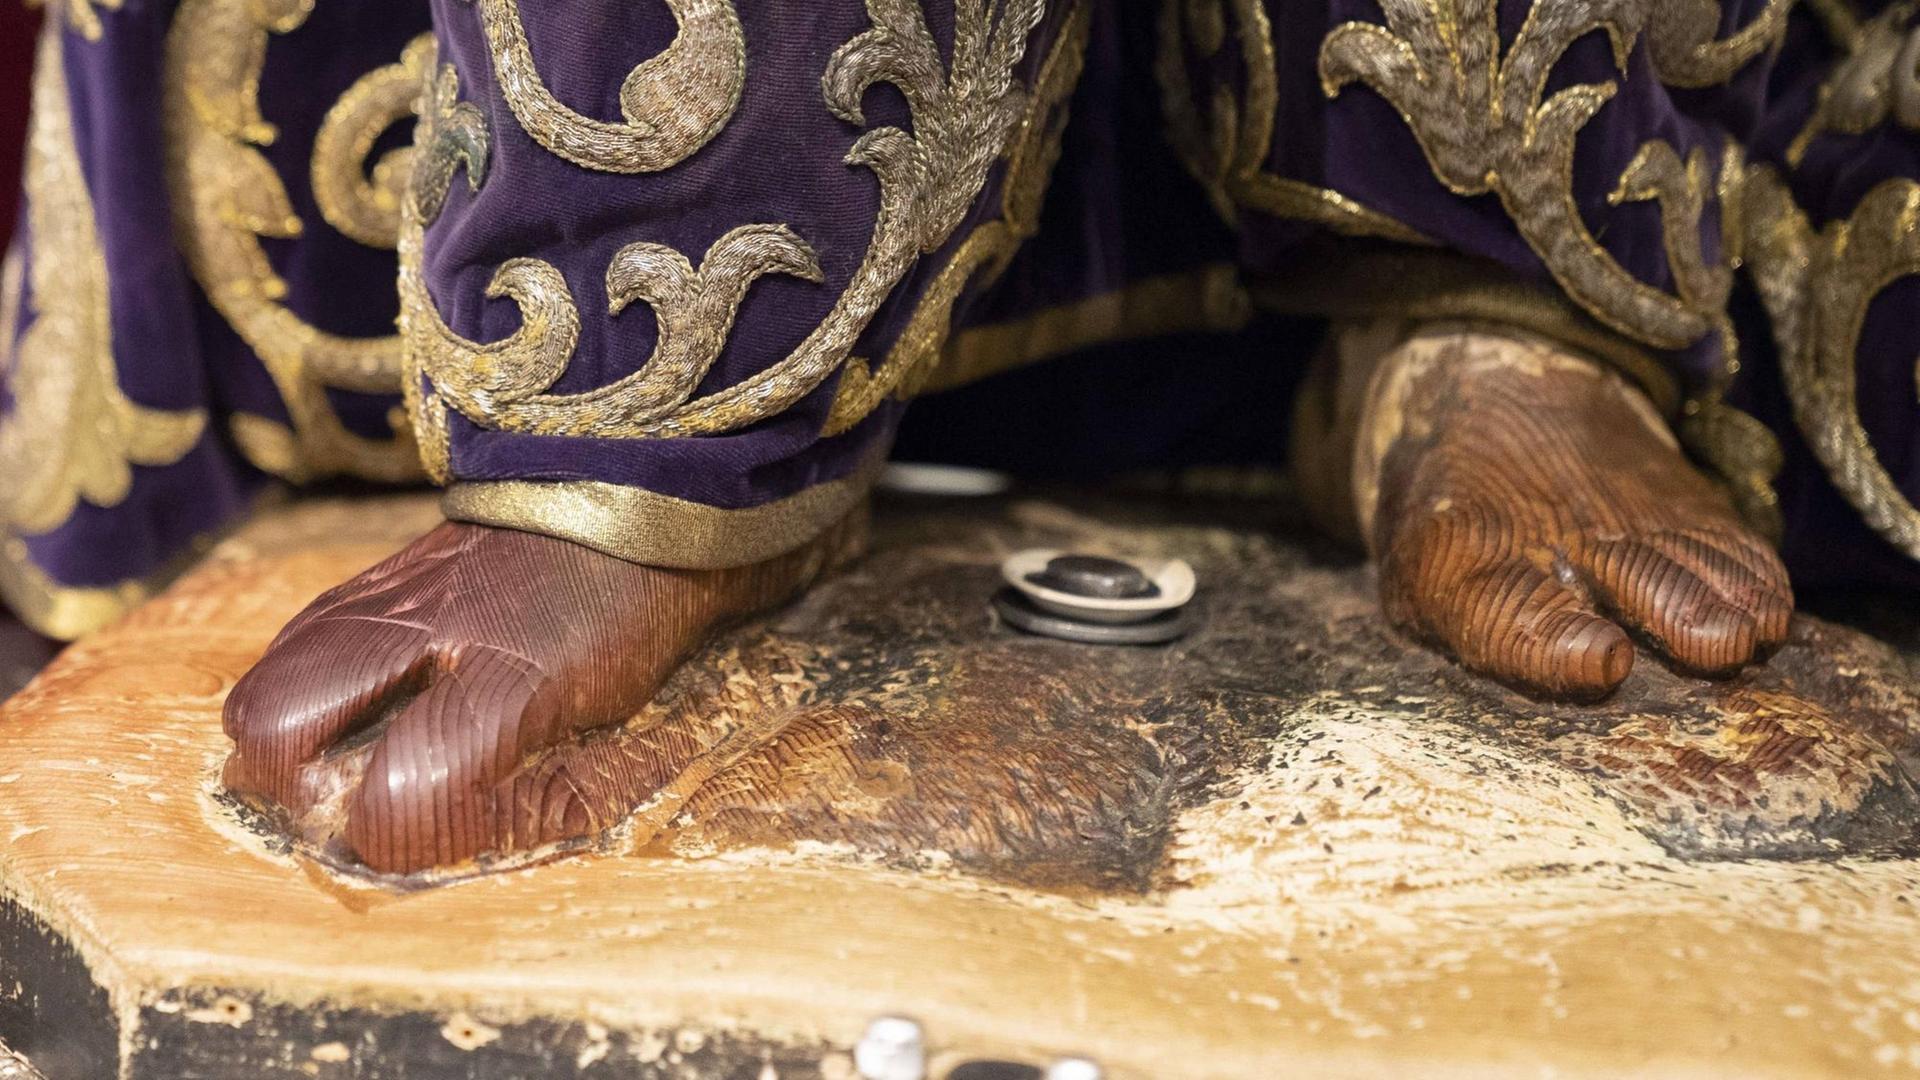 Jedes Jahr am ersten Freitag im März kommen tausende Christen in die Basilika des Christus von Medinaceli in Madrid, Spanien, um der berühmten Jesus-Figur die Füße zu küssen